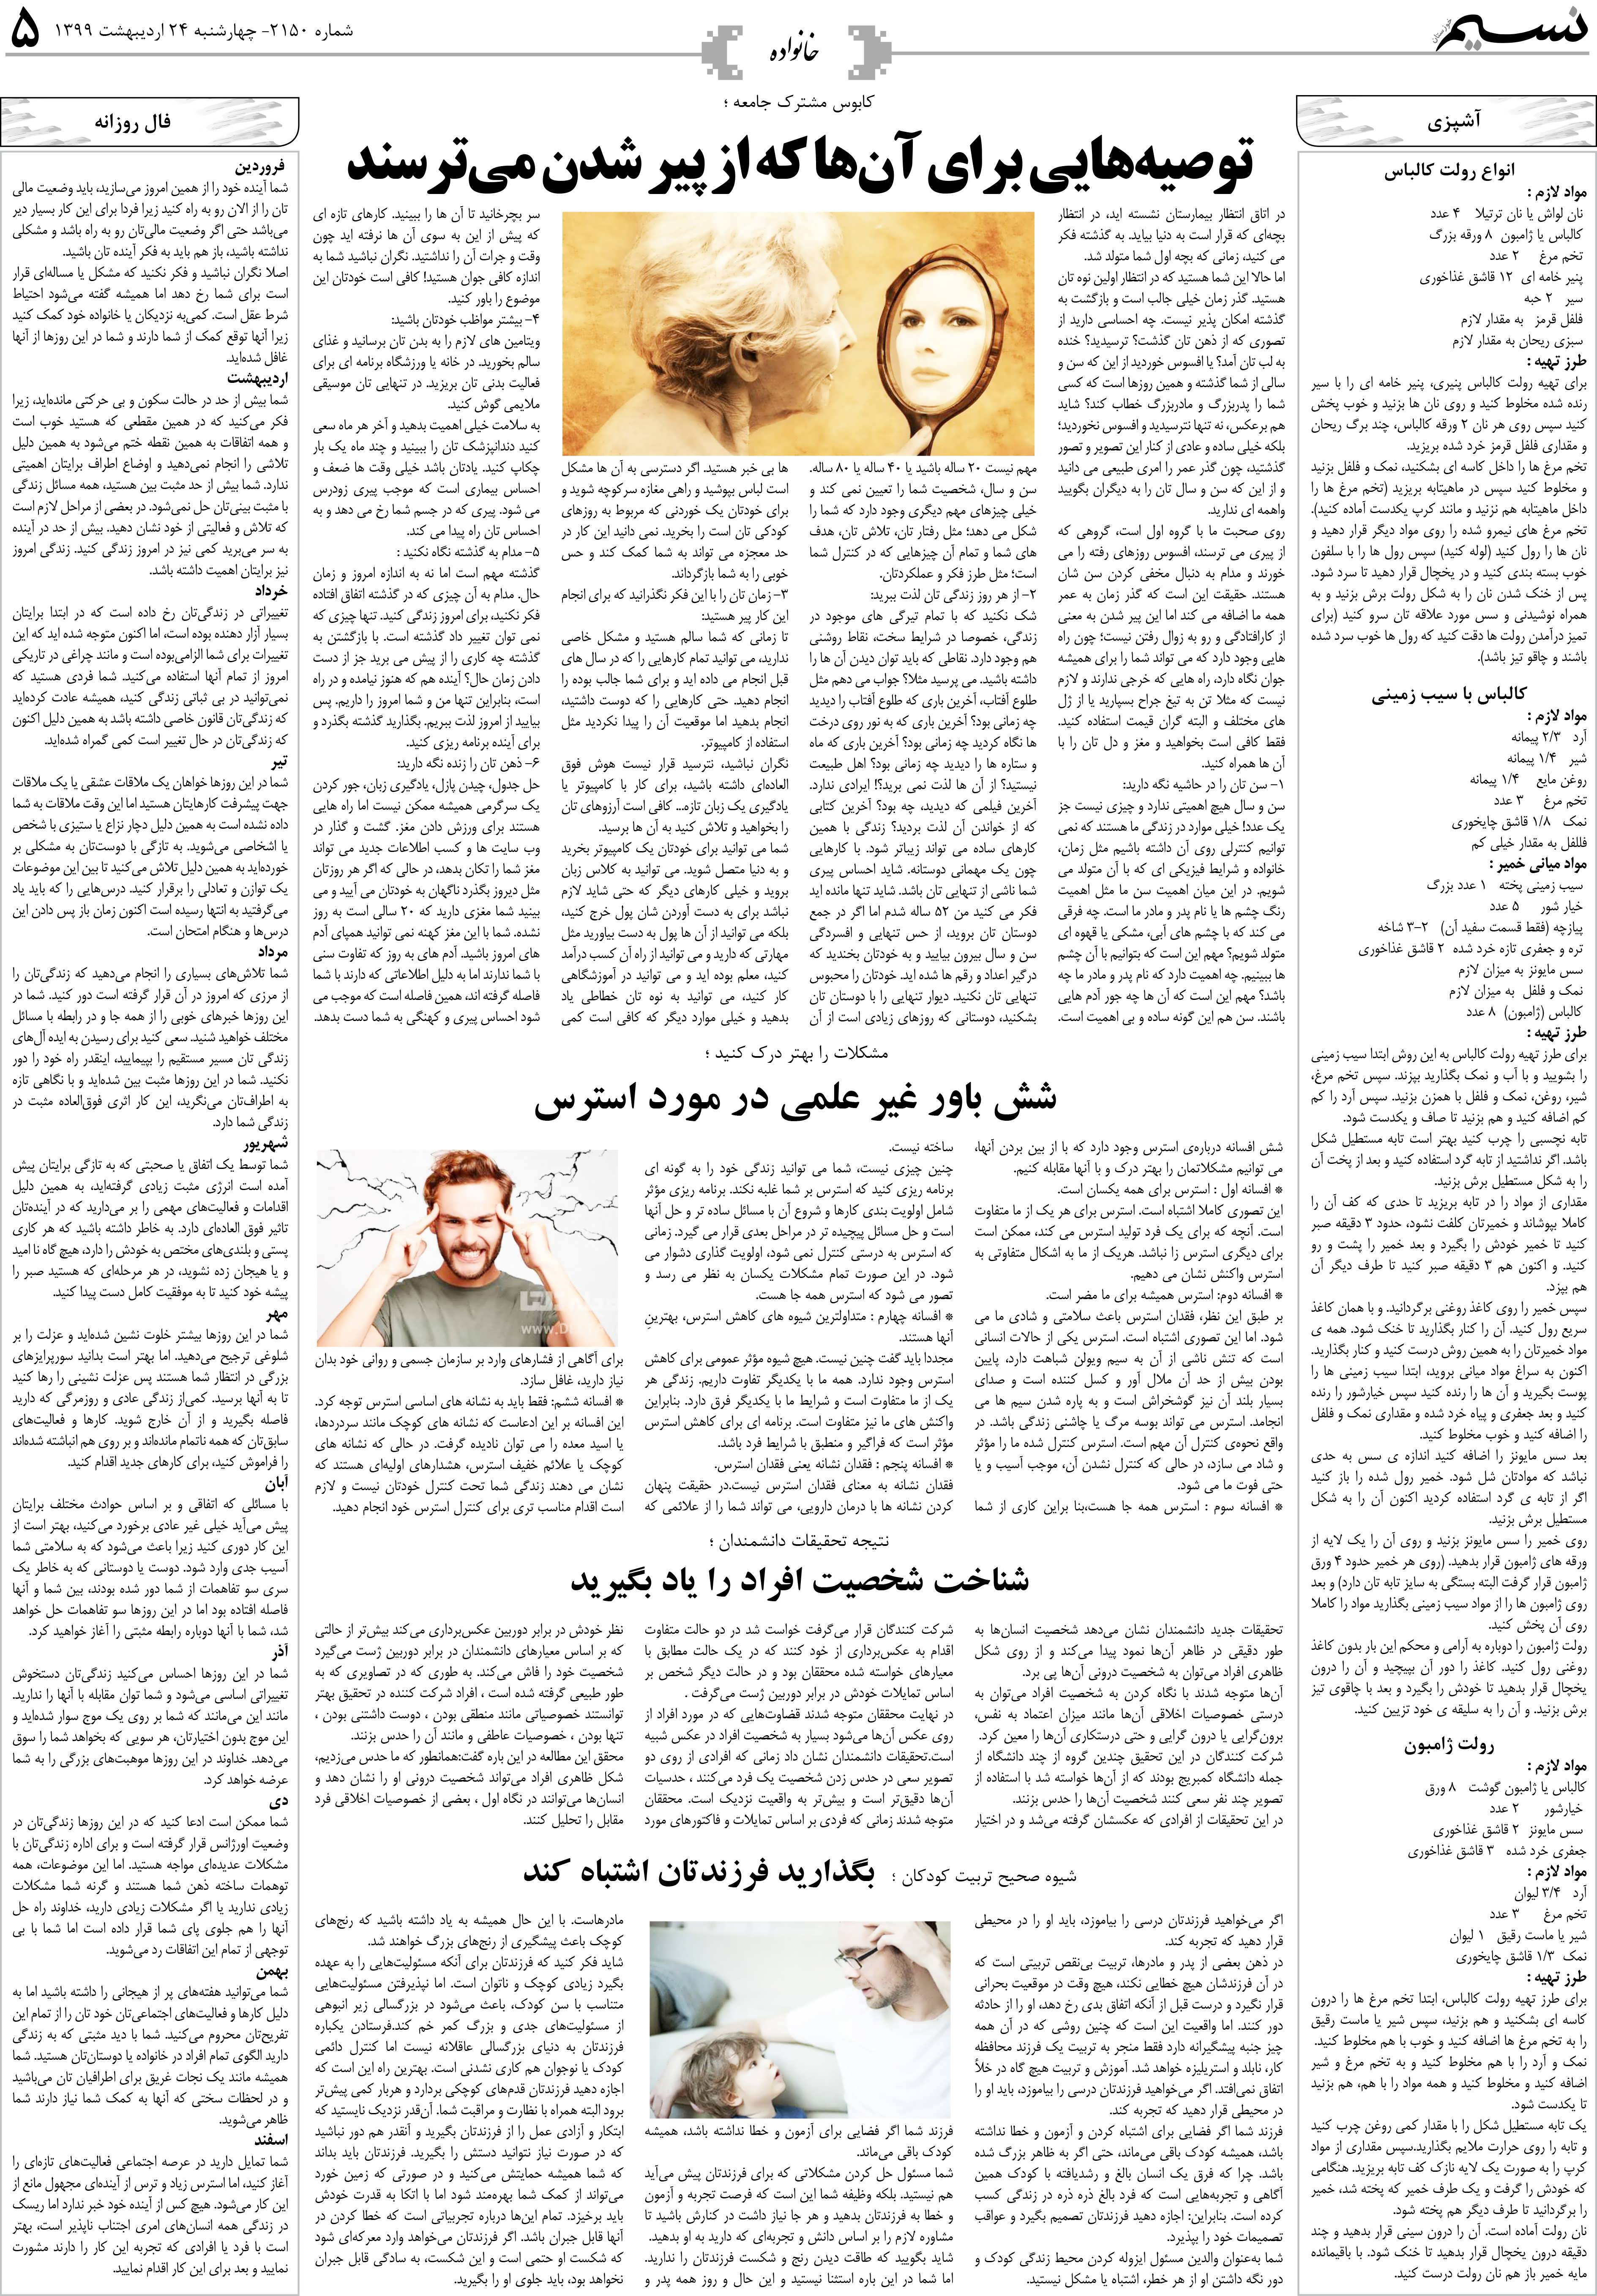 صفحه خانواده روزنامه نسیم شماره 2150